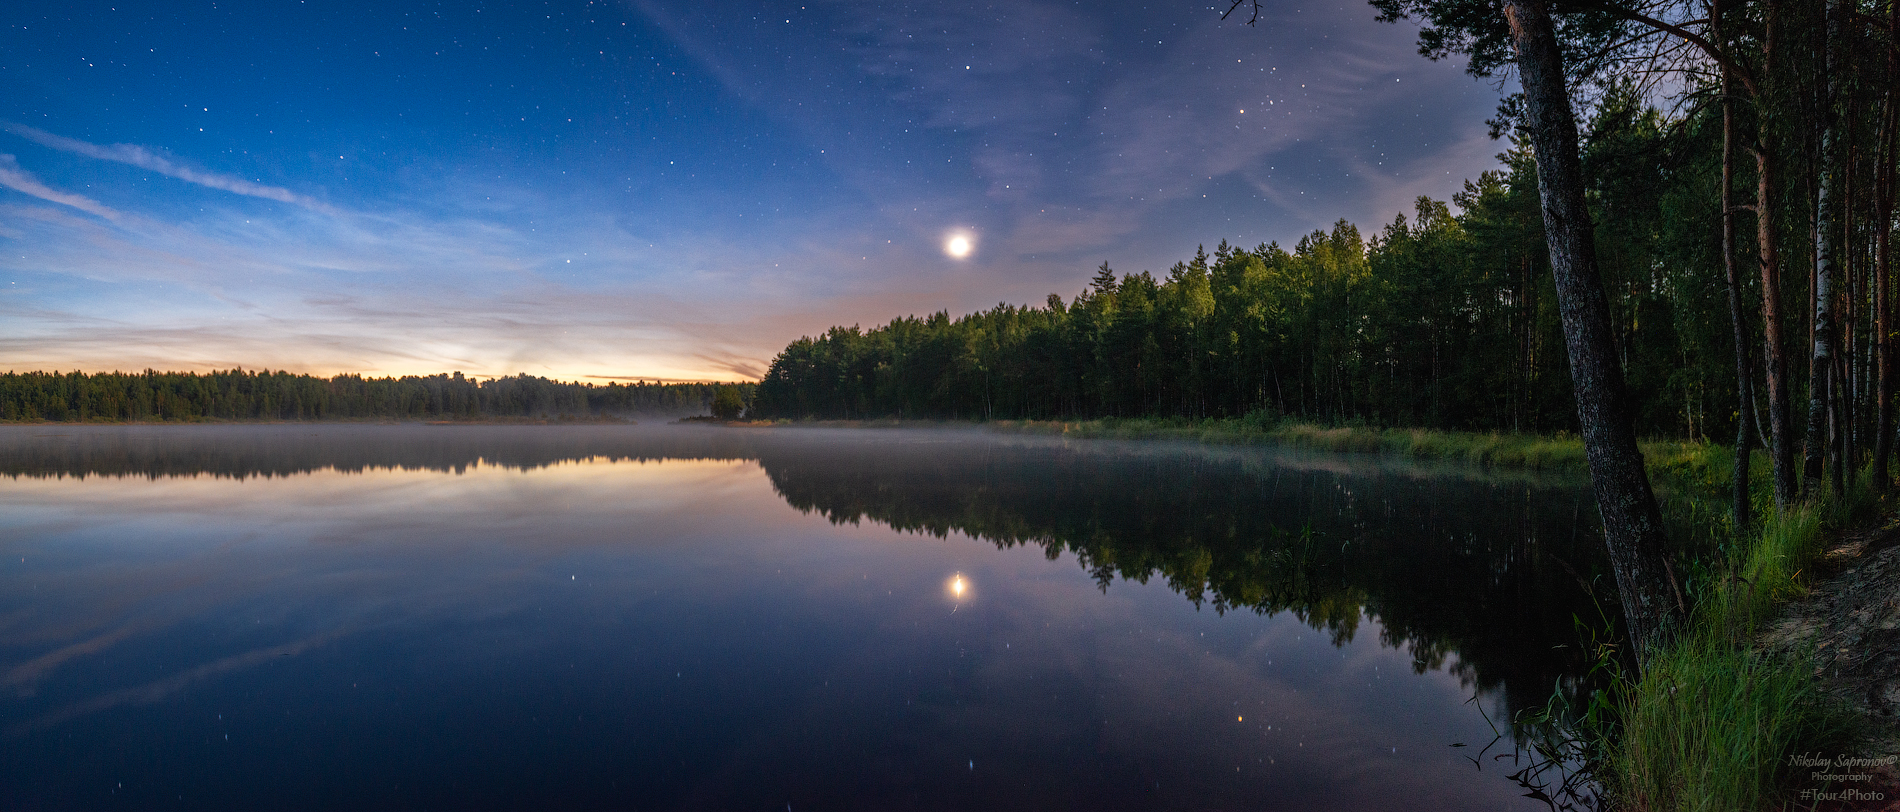 лесное озеро, сириус, звезды, звездное небо, летняя ночь, лунный свет, владимирская область, киржачский район, Николай Сапронов